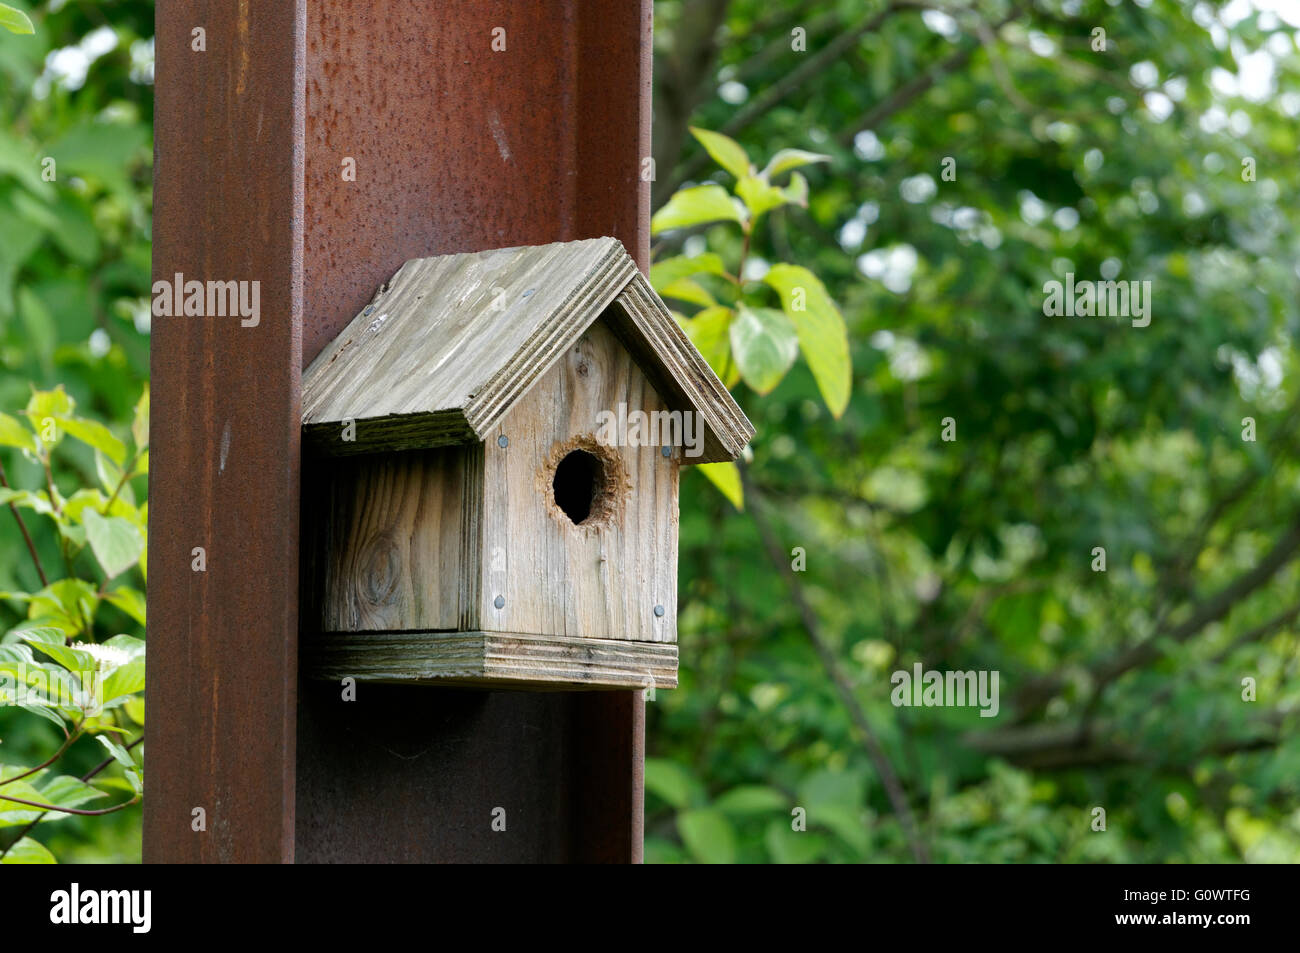 Legno non verniciata birdhouse montata su una trave in ferro con verde in background Foto Stock